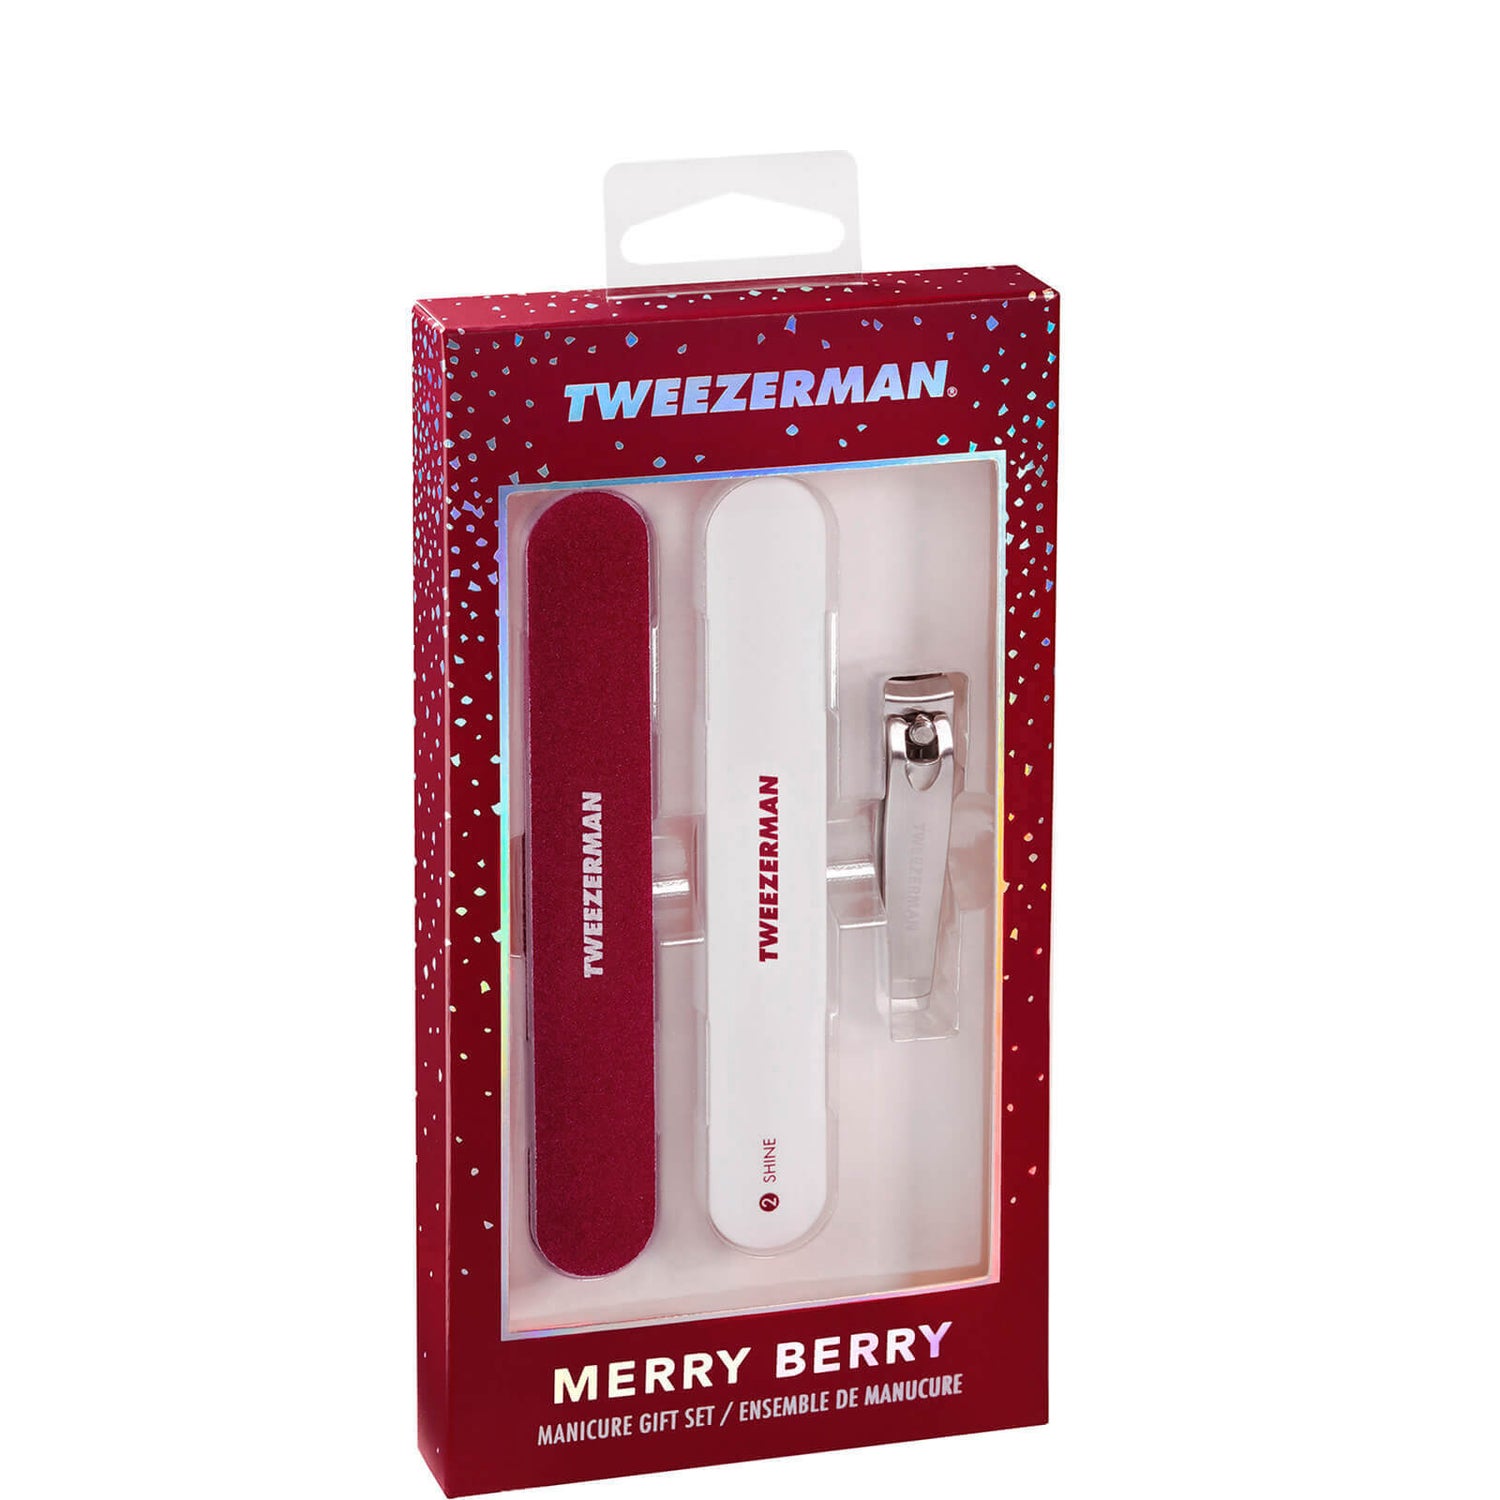 Tweezerman Merry Berry Manicure Gift Set